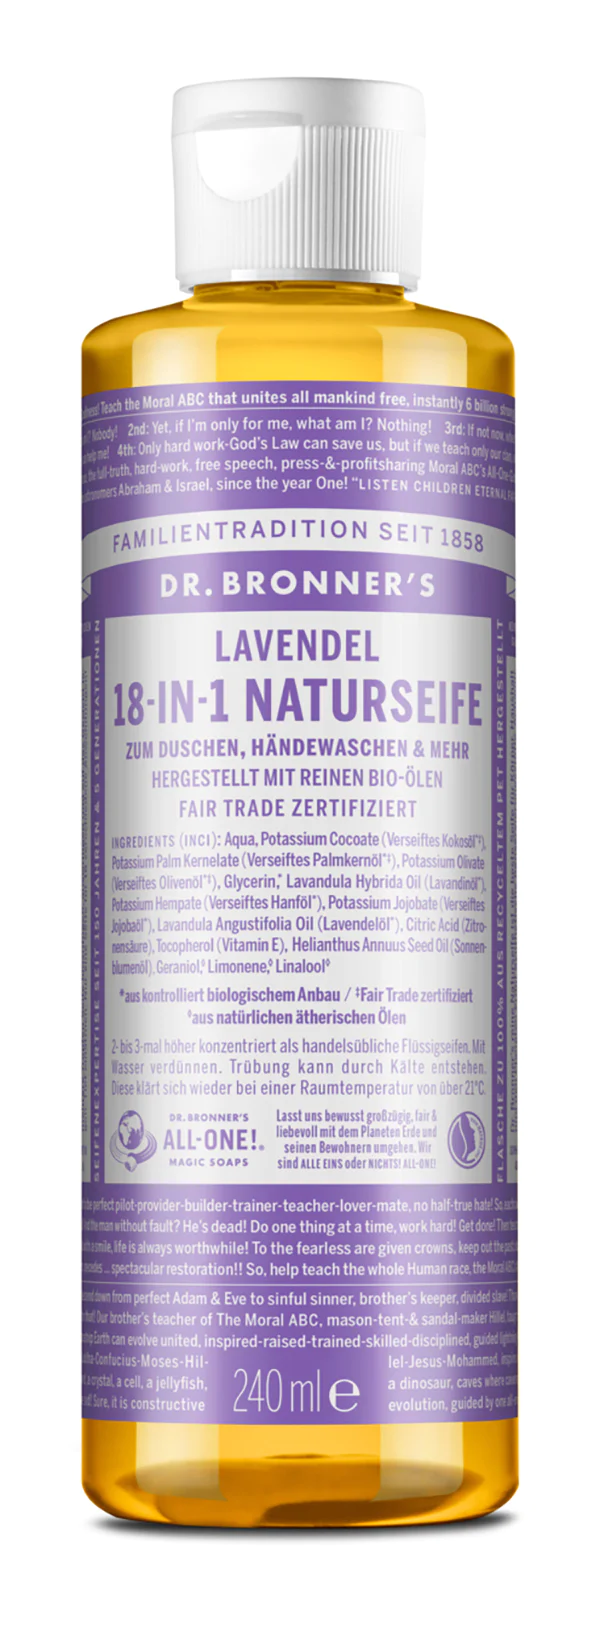 Dr Bronner 18-IN-1 NATURSEIFE Lavendel 240ml